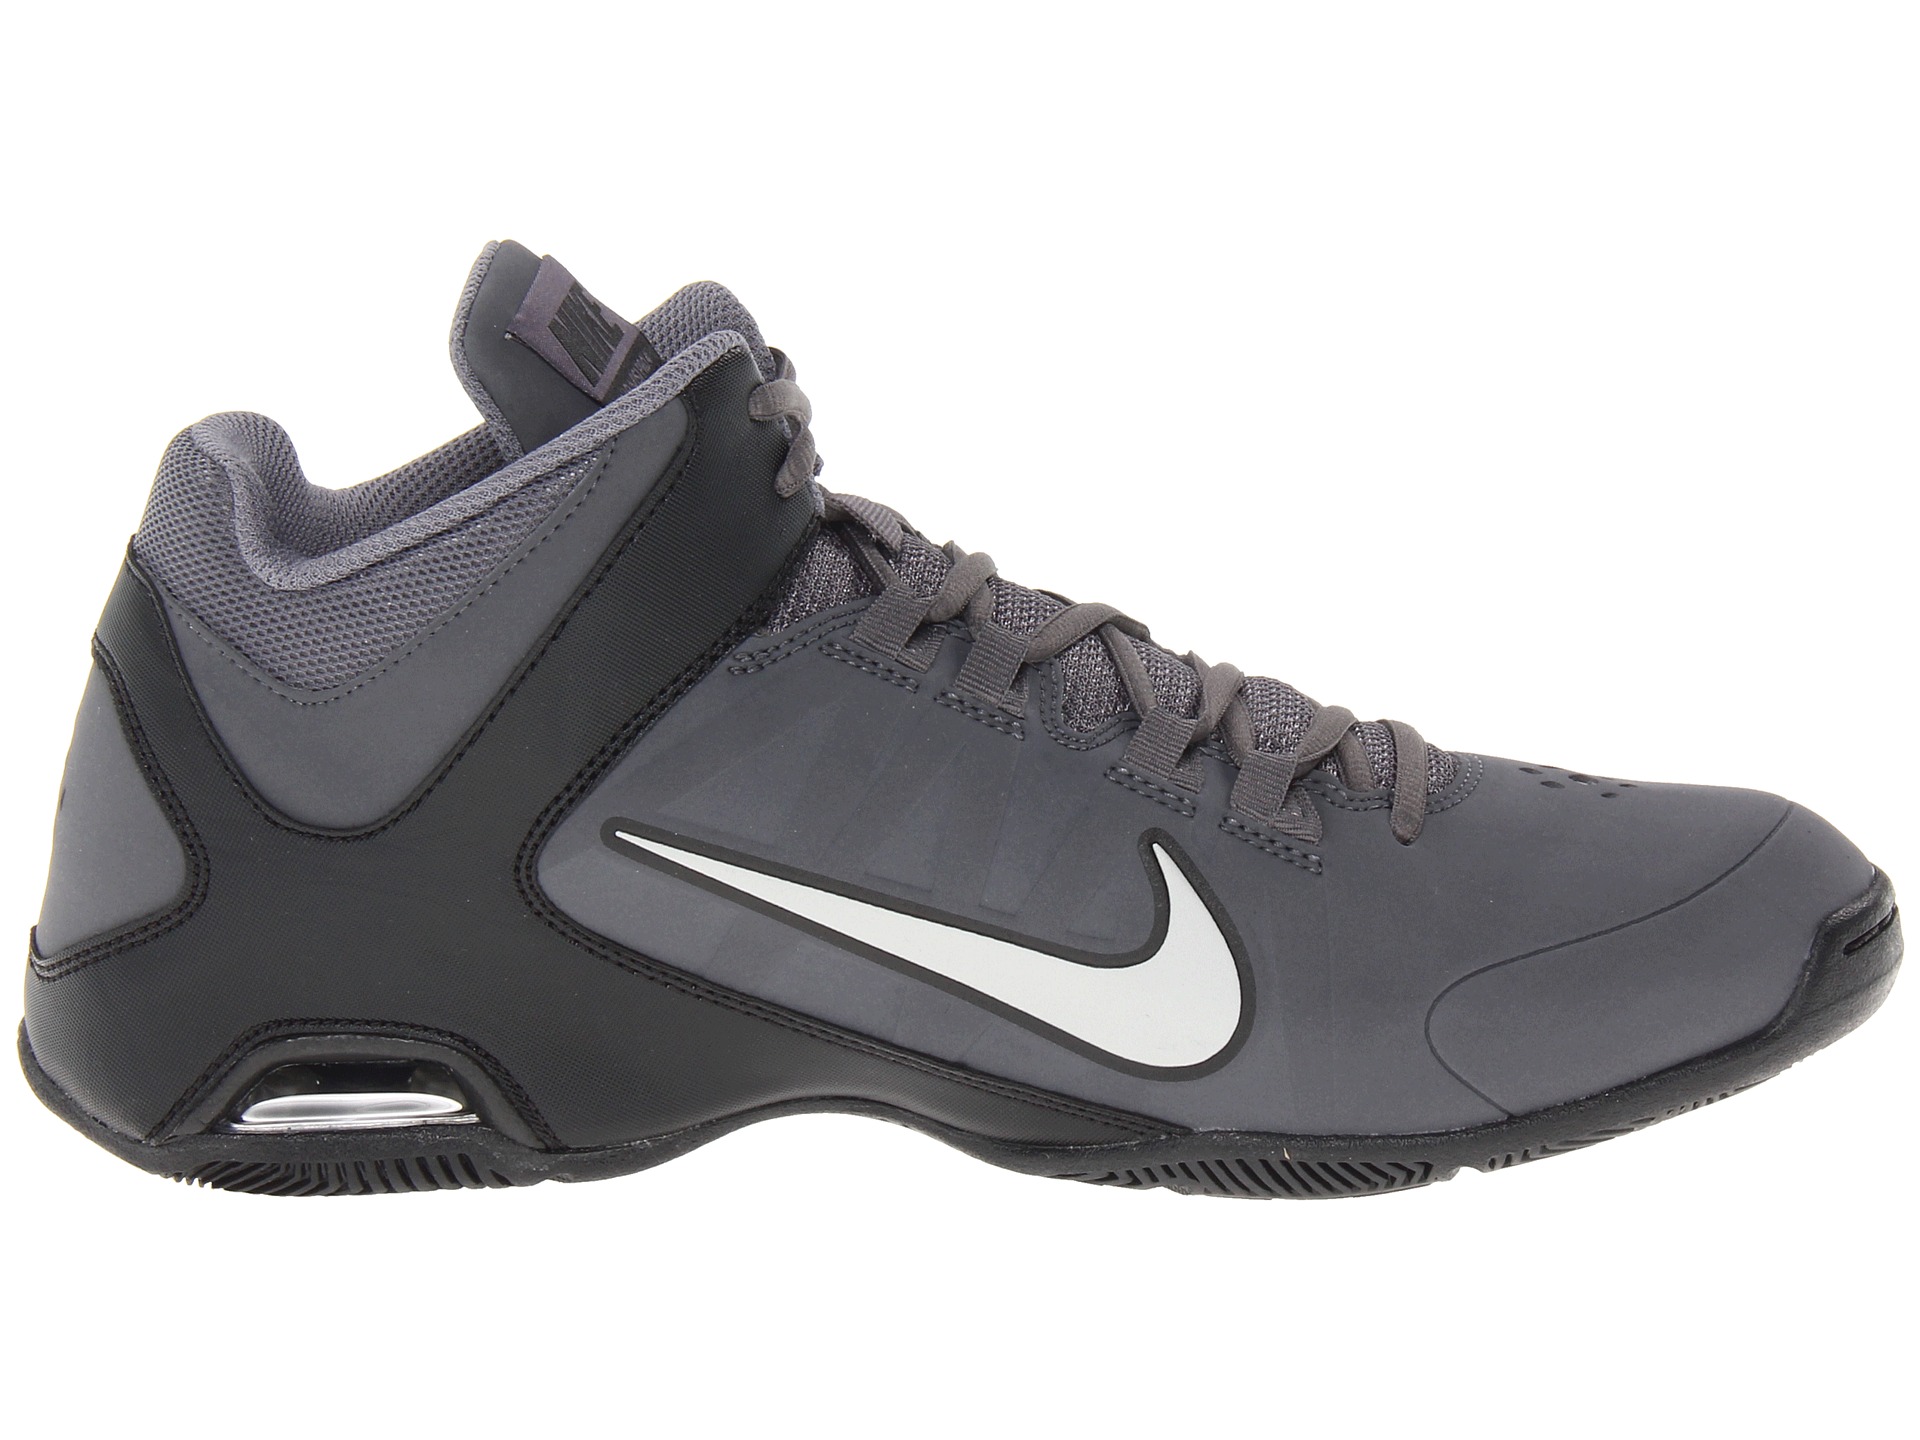 Nike Air Visi Pro Iv Nubuck, Shoes | Shipped Free at Zappos